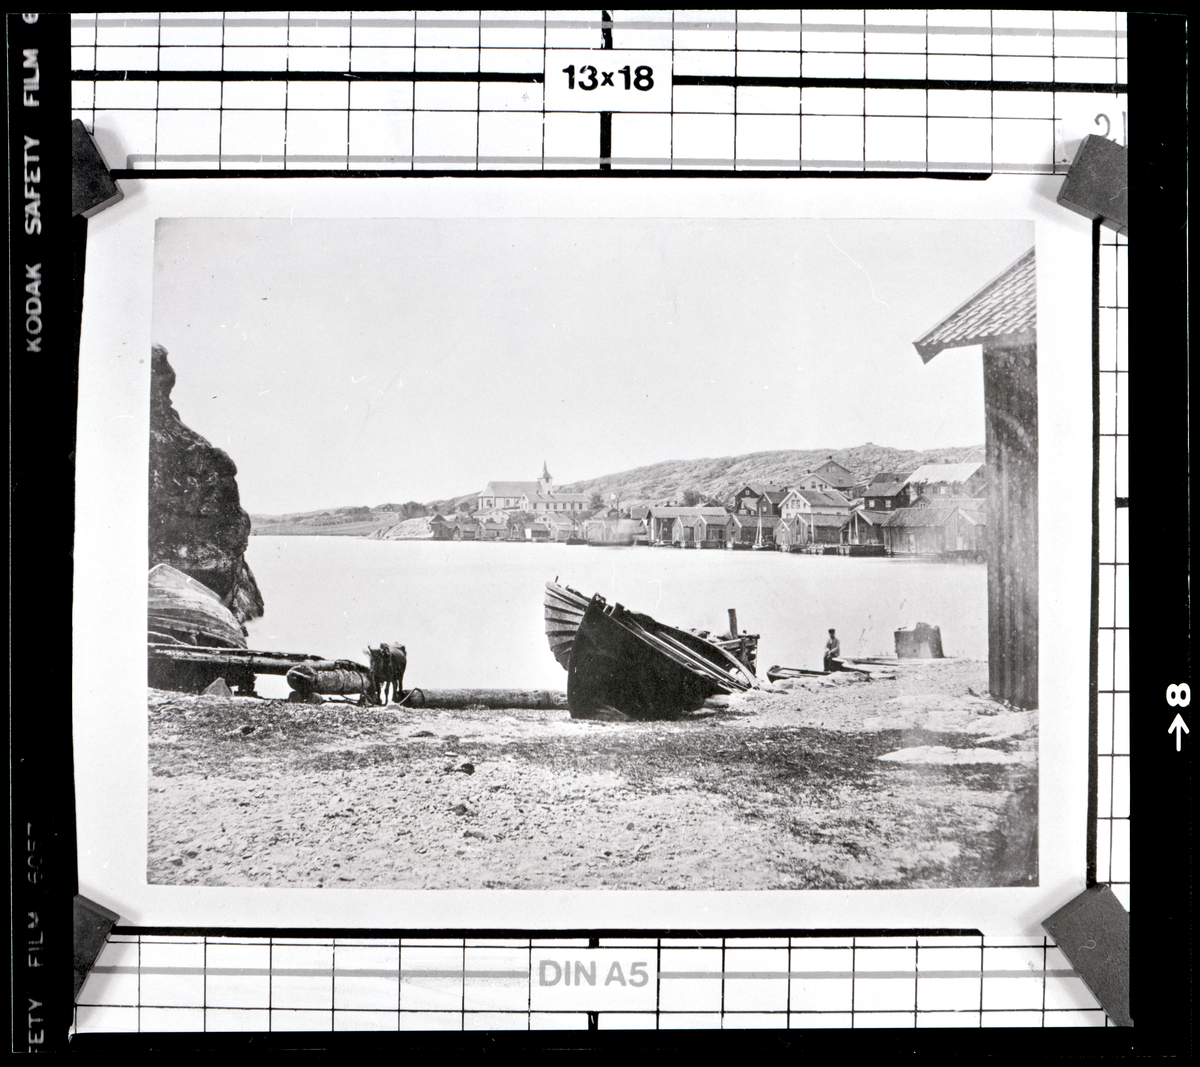 Bildtext till kopian i fotoalbumet: "Kilen år 1880".